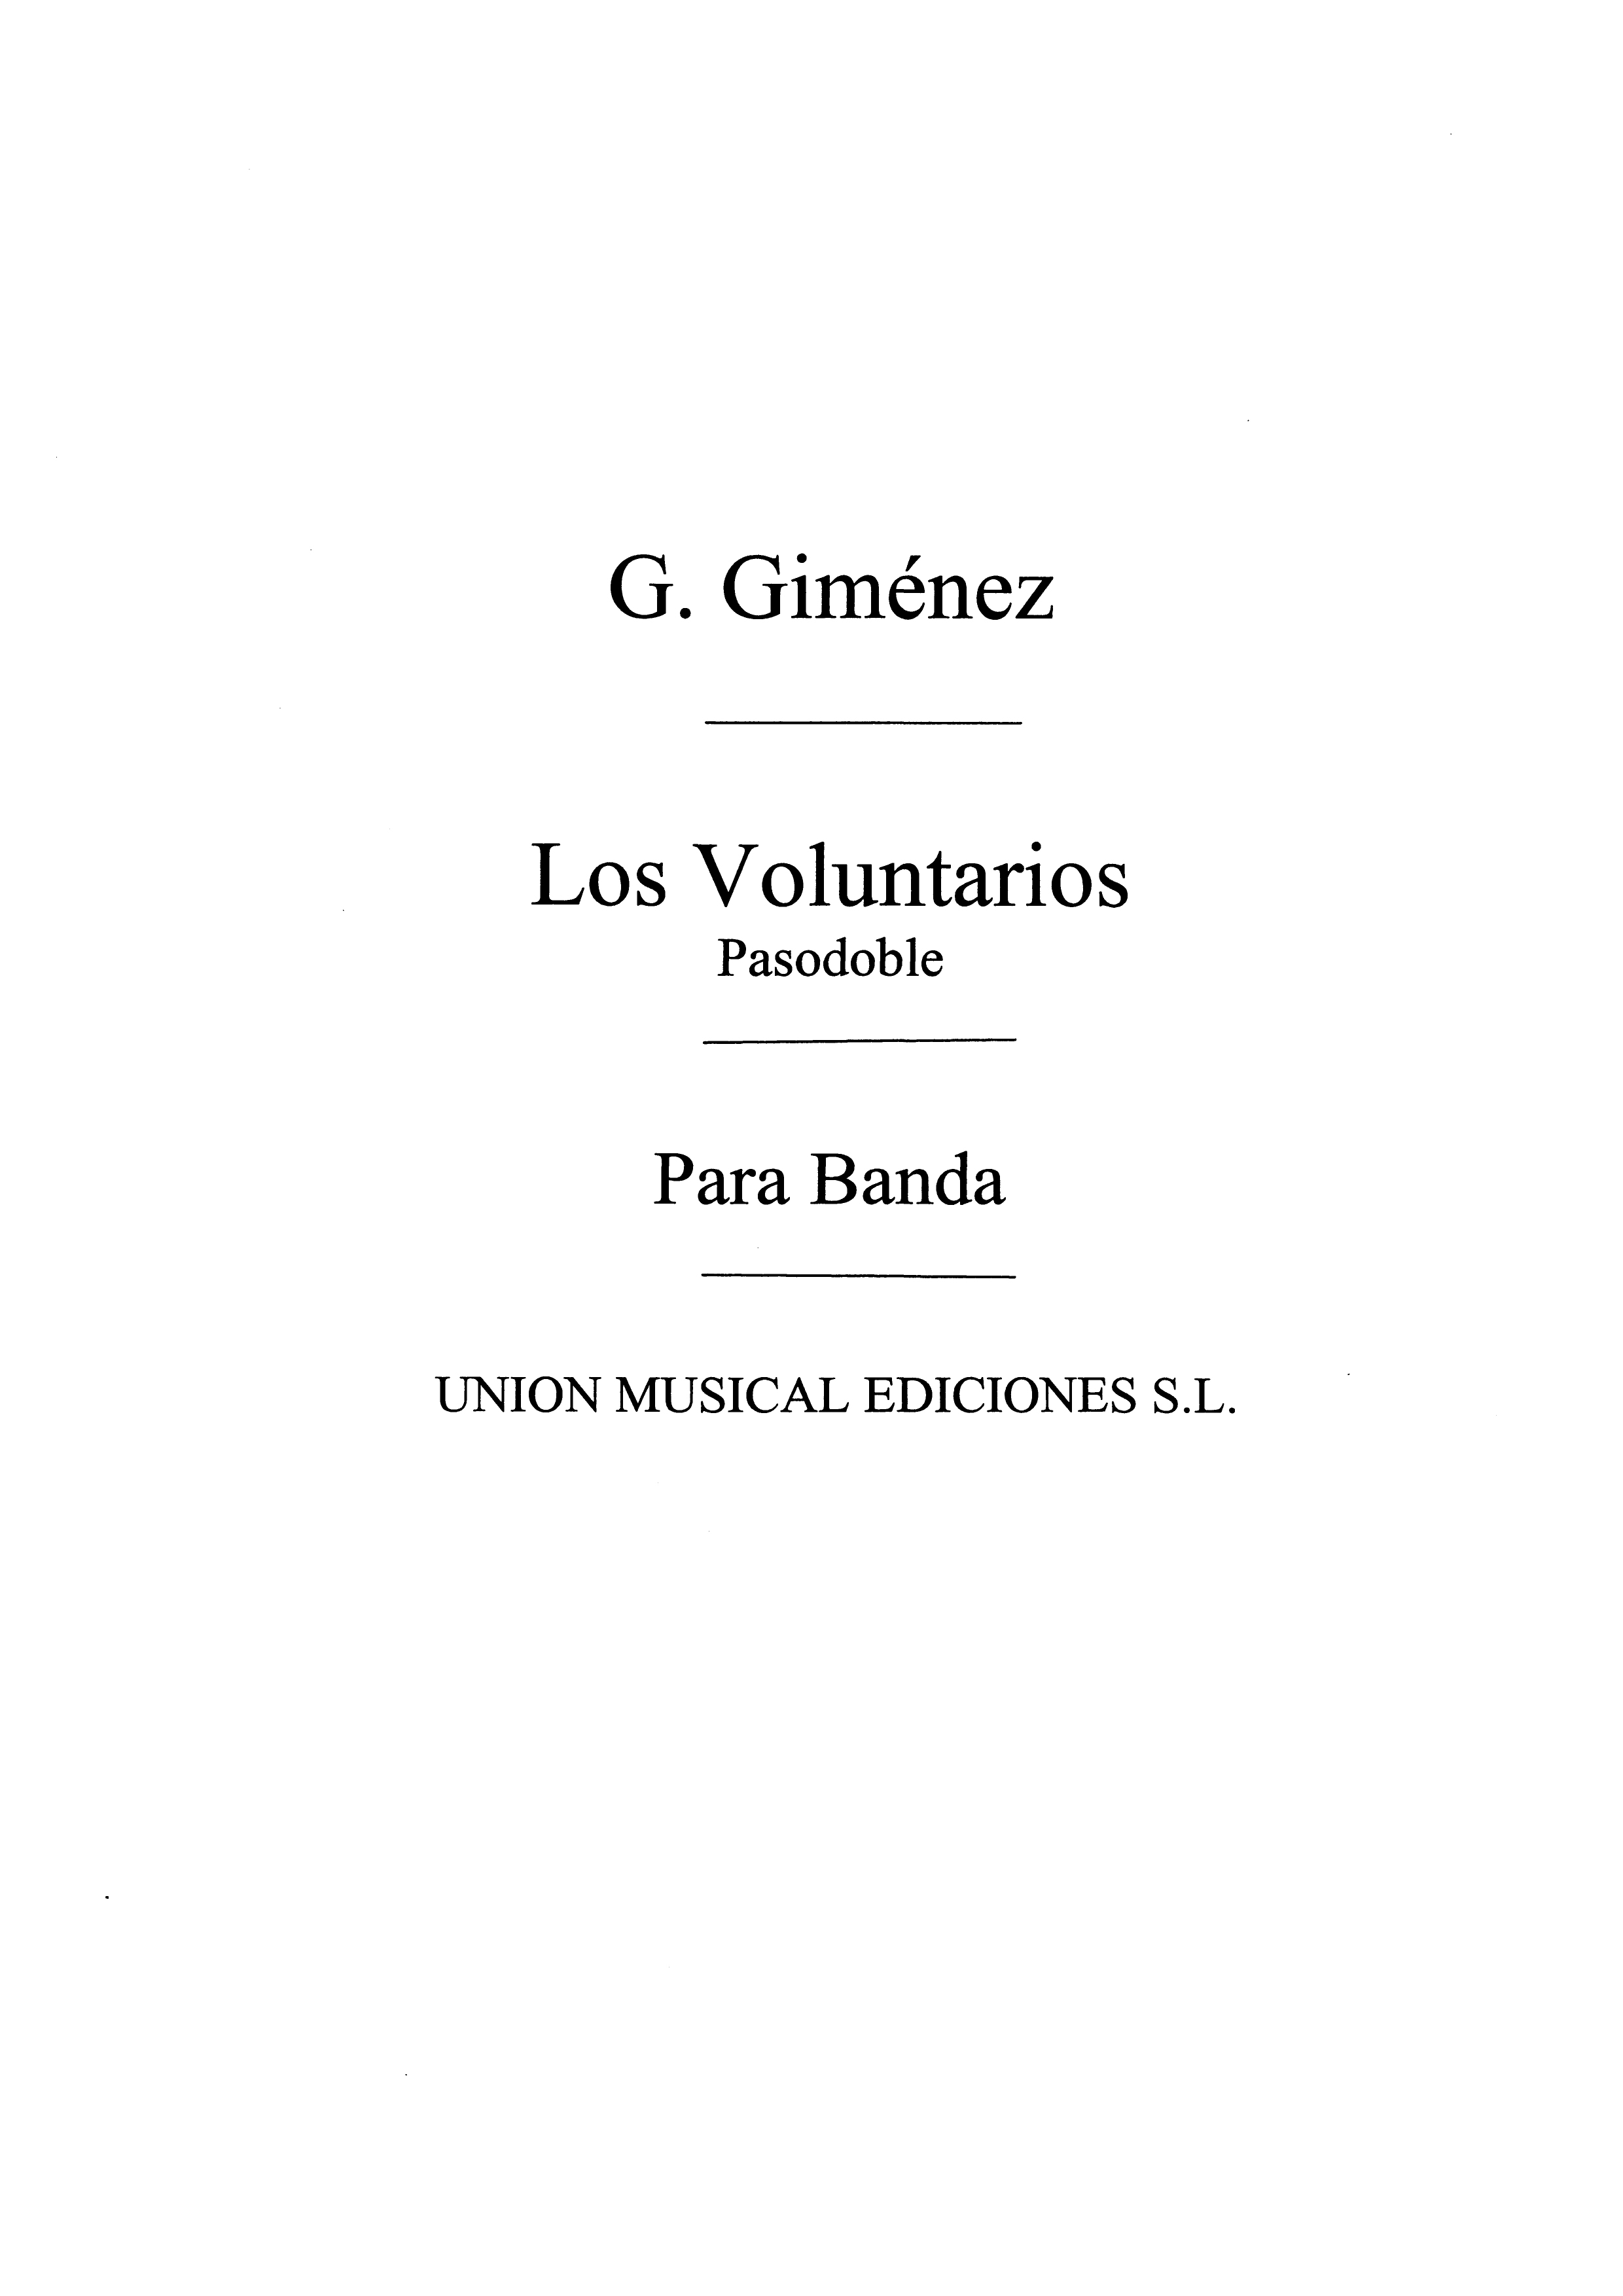 Gerónimo Giménez: Los Voluntarios: Concert Band: Score and Parts